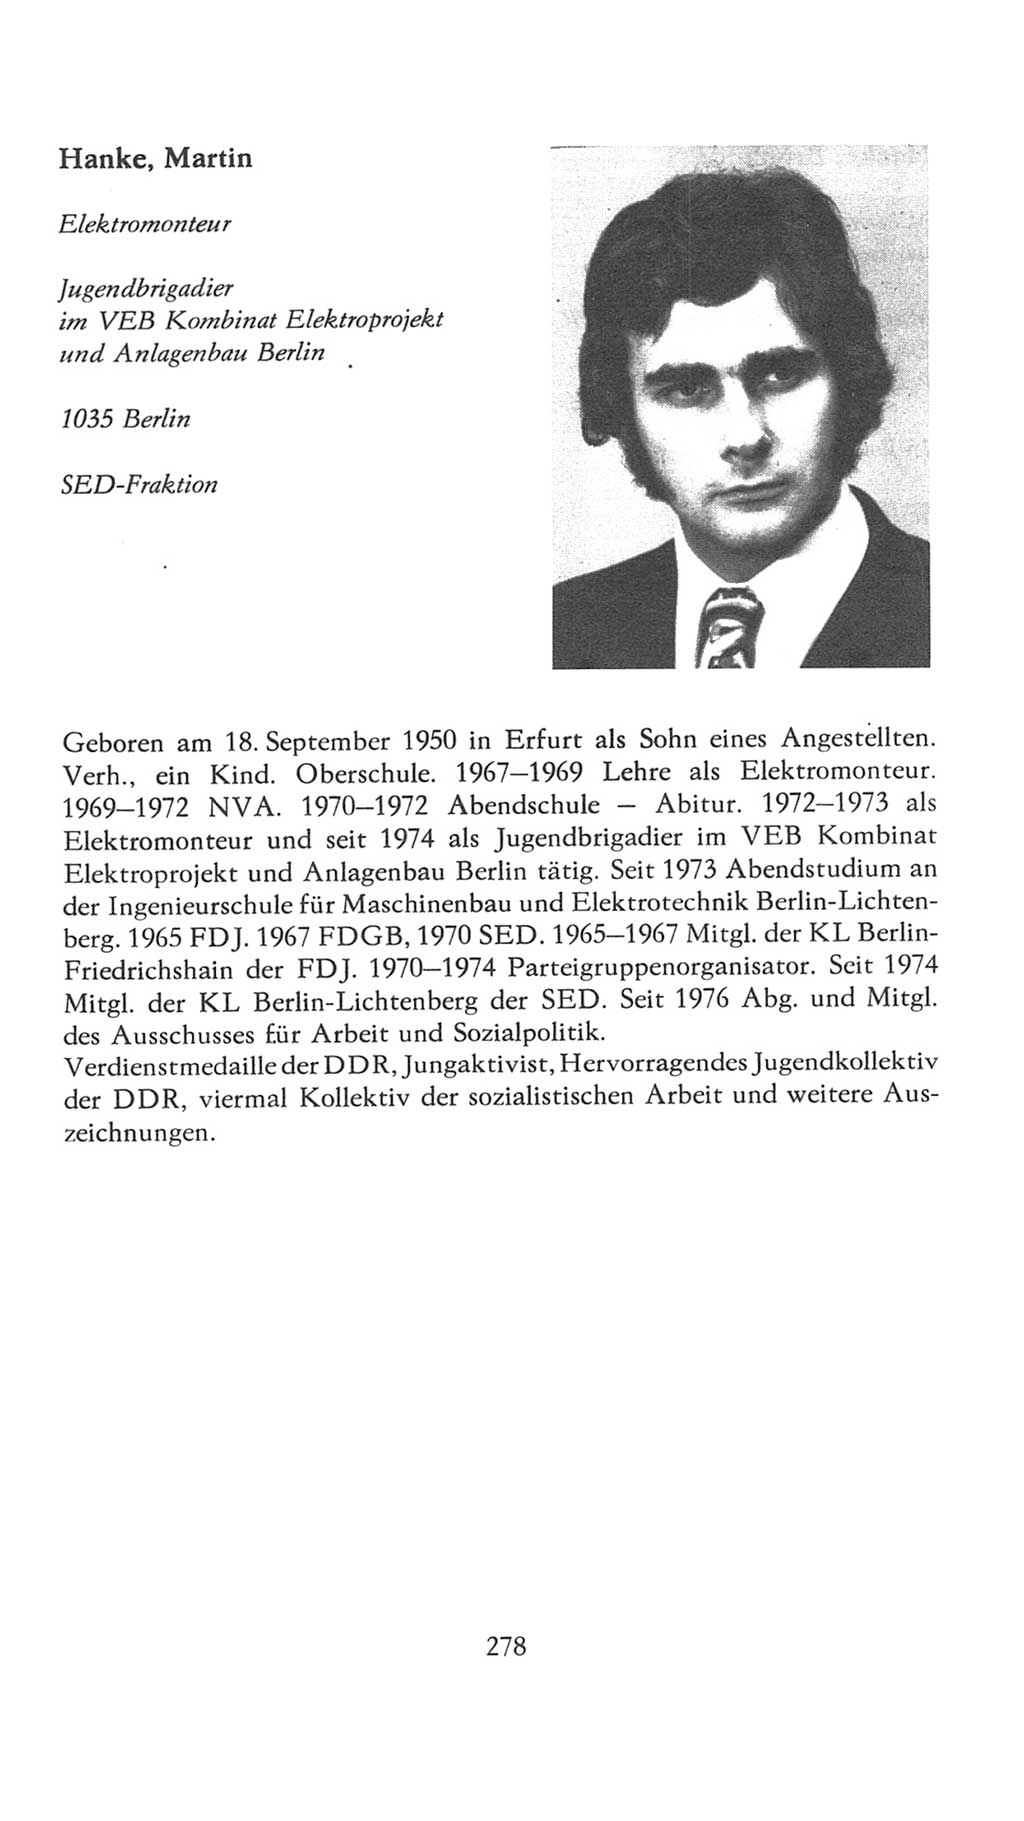 Volkskammer (VK) der Deutschen Demokratischen Republik (DDR), 7. Wahlperiode 1976-1981, Seite 278 (VK. DDR 7. WP. 1976-1981, S. 278)